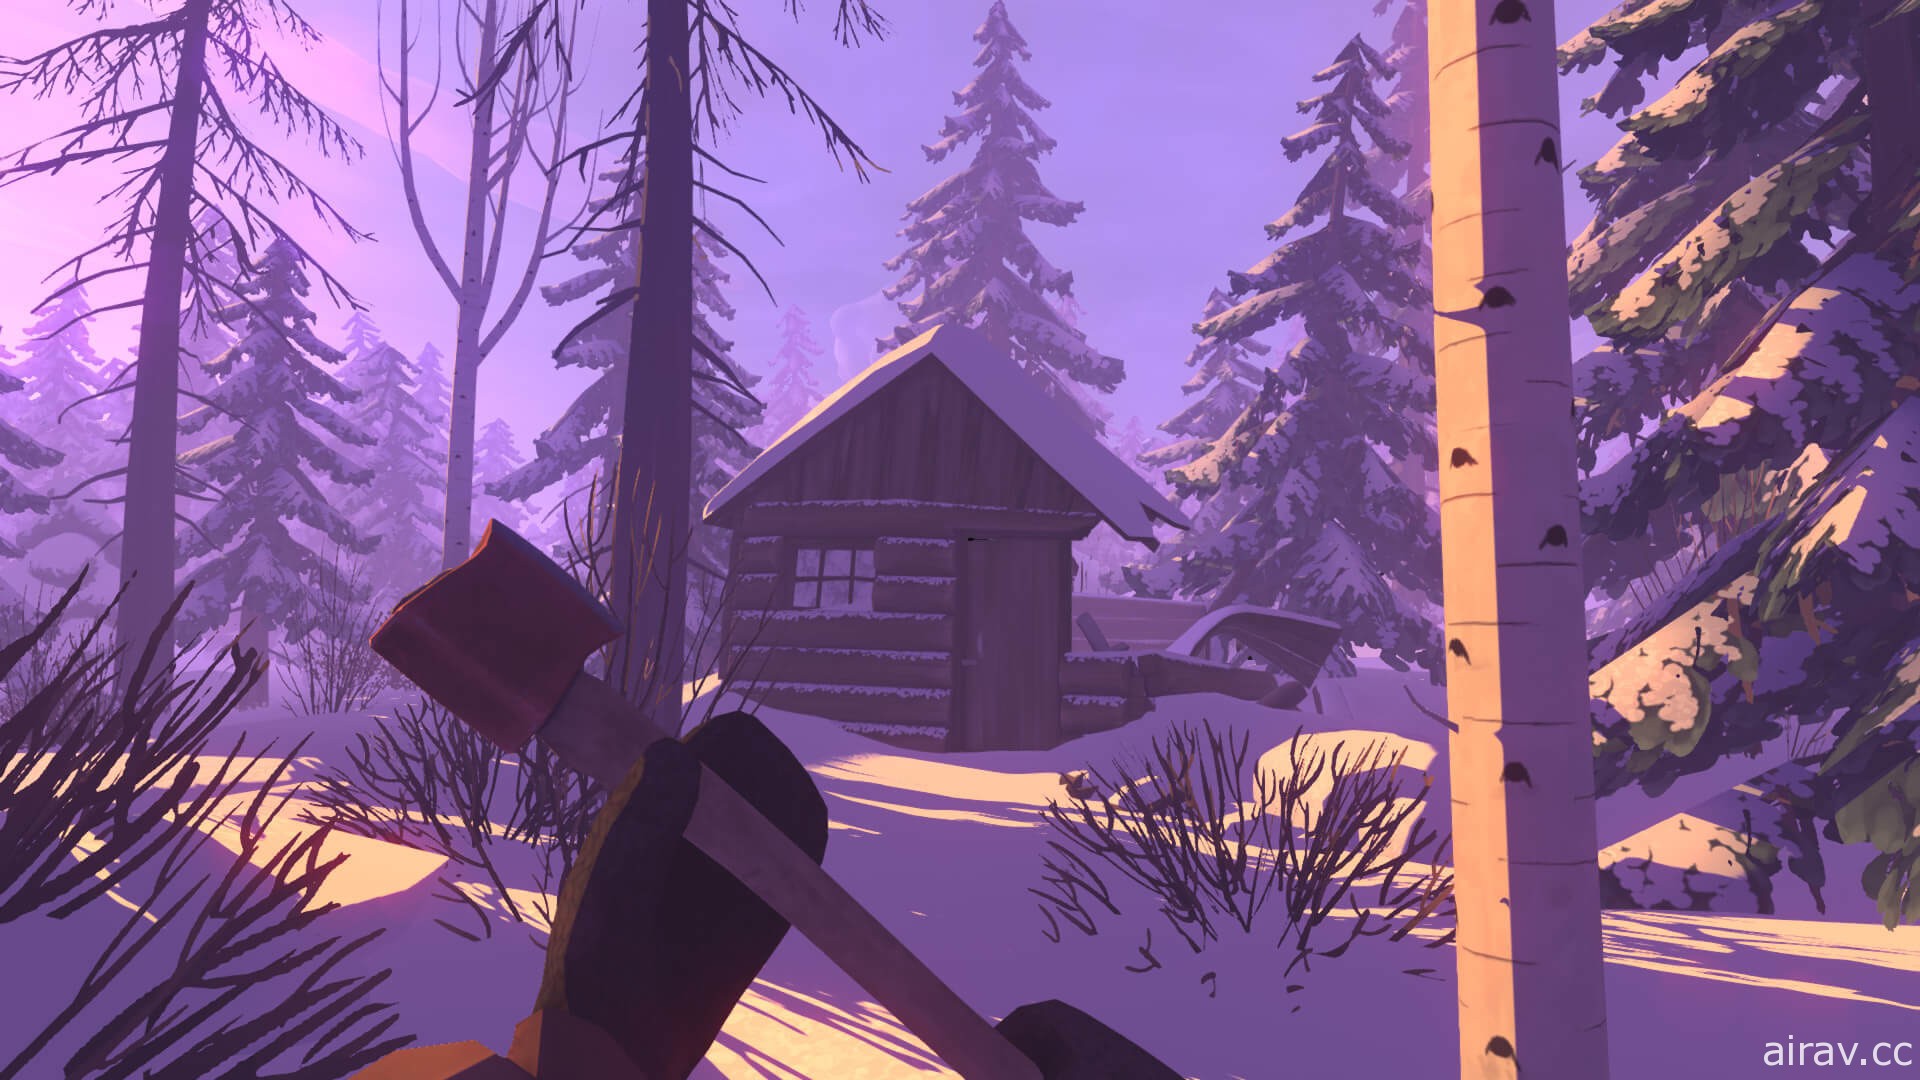 故事导向生存游戏《红灯笼 The Red Lantern》10 月底推出 与雪橇狗在荒野中冒险